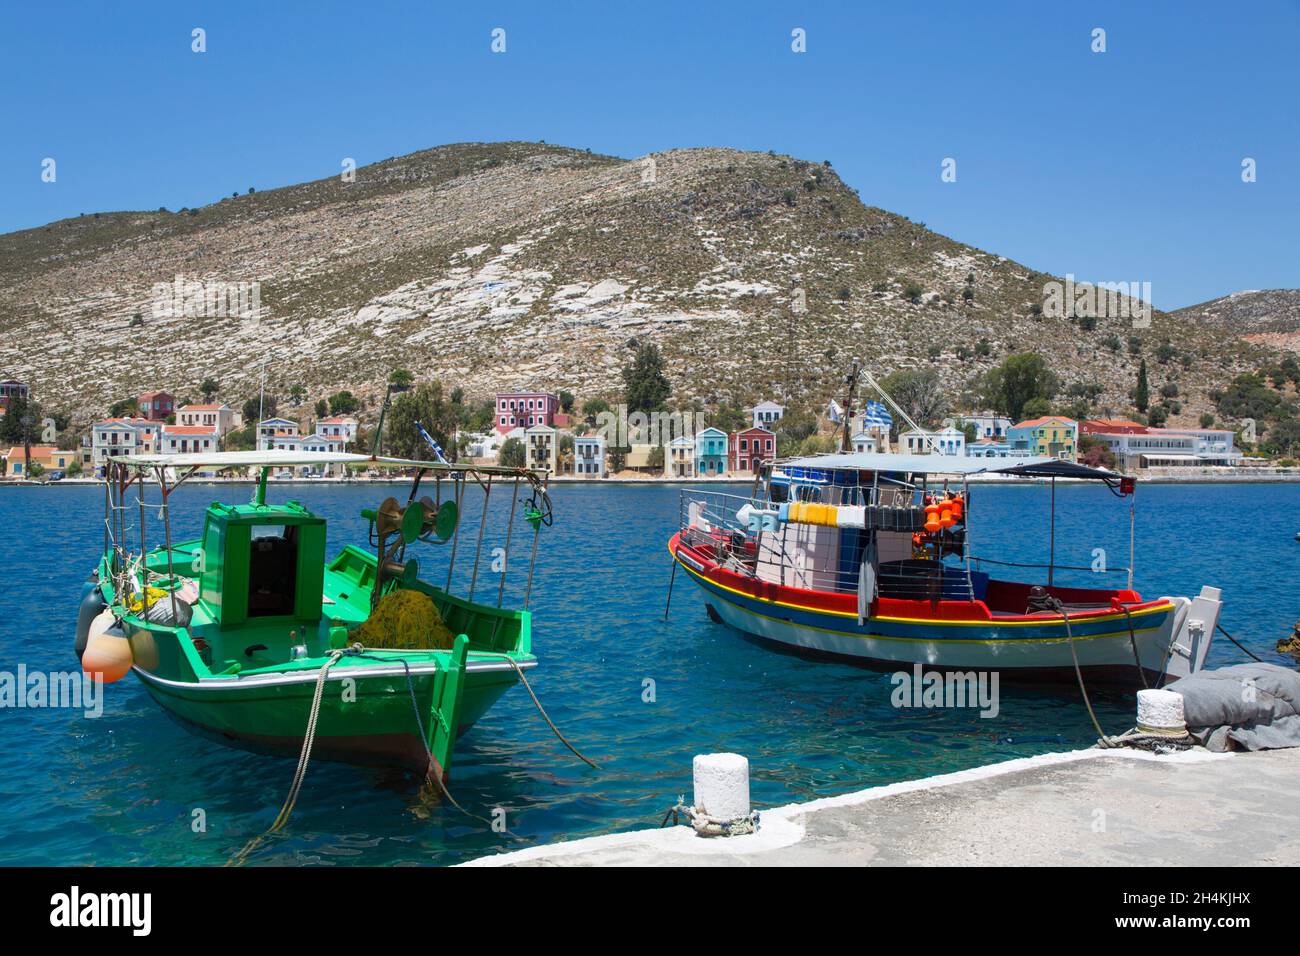 Bateaux dans le port, île de Kastellorizo (Megisti), groupe dodécanèse, Grèce Banque D'Images